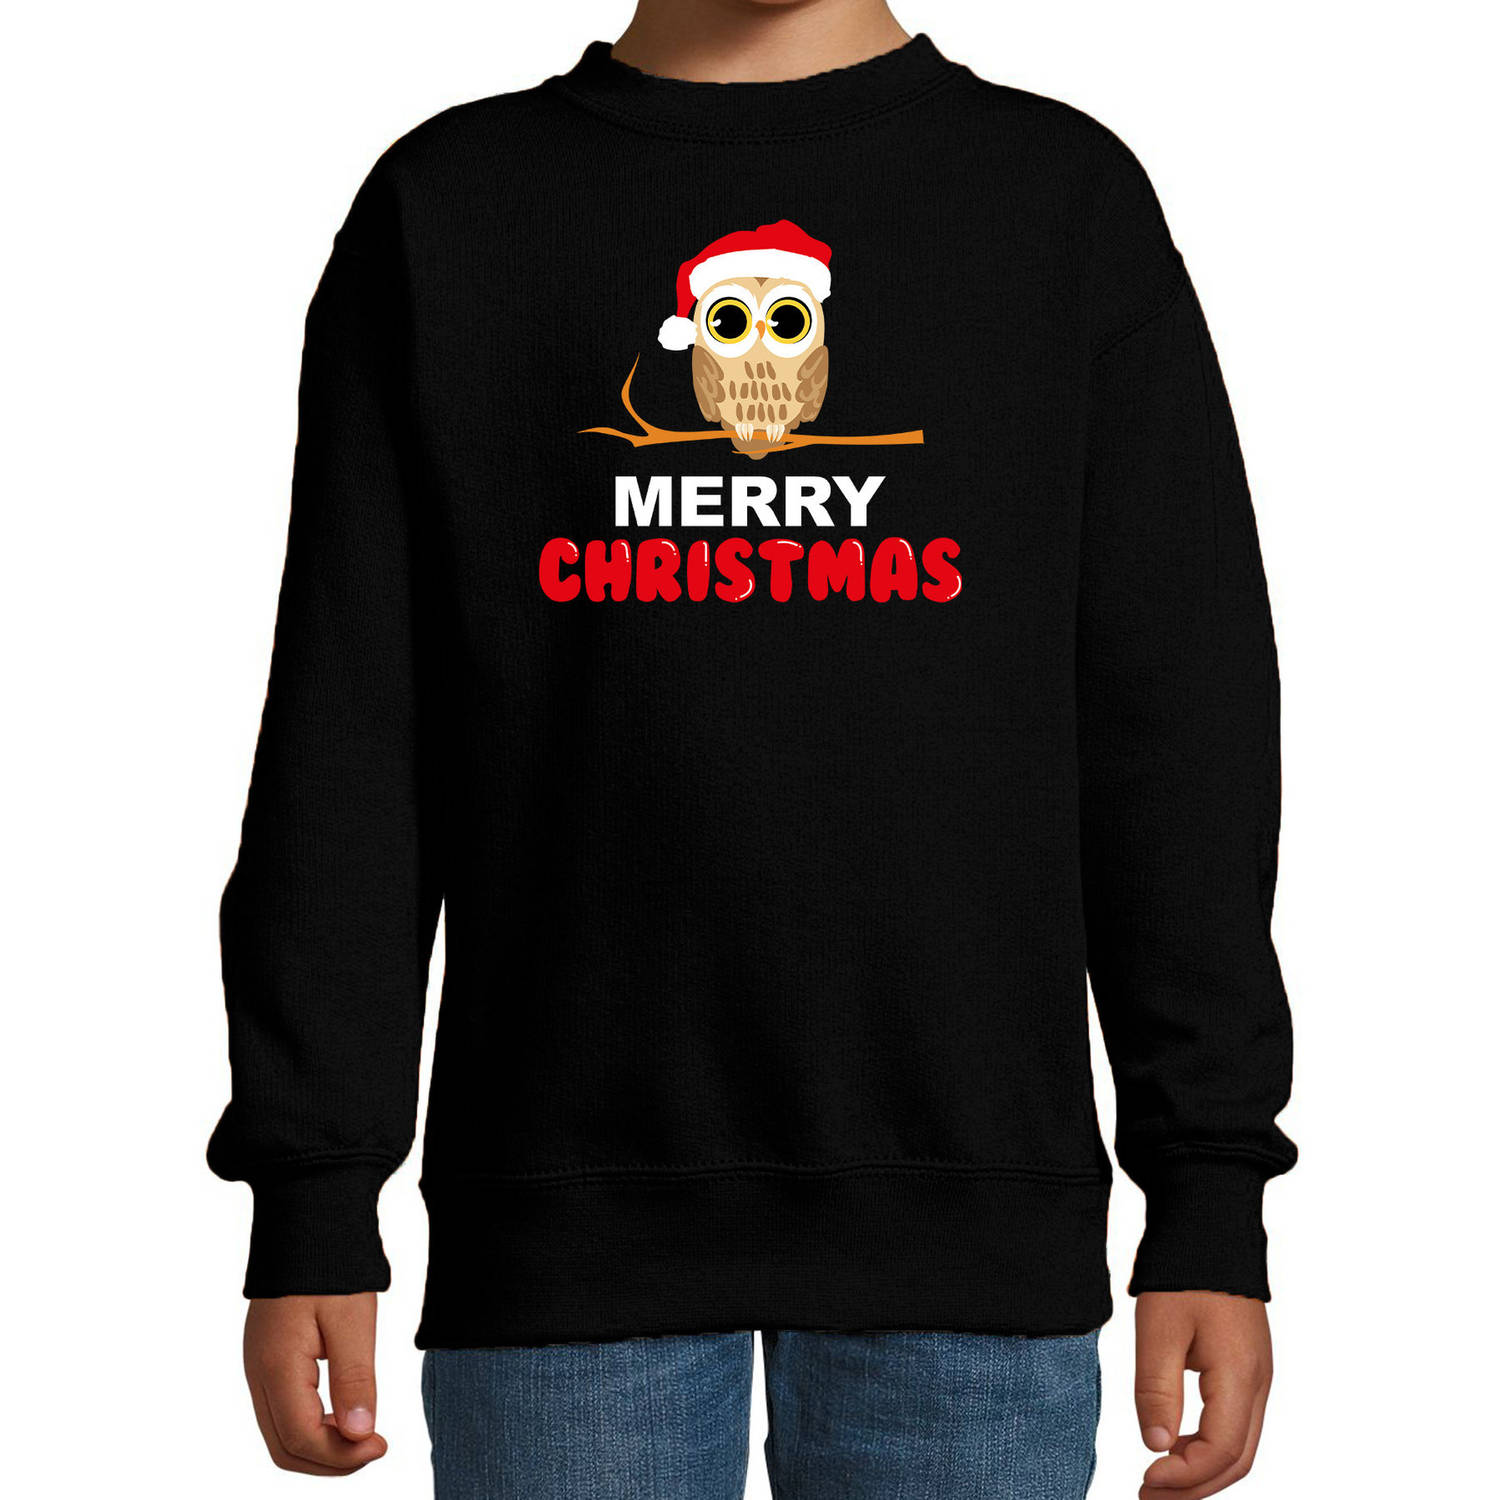 Leuke dieren Kersttrui christmas uil sweater Kerst zwart voor kinderen 5-6 jaar (110/116) - kerst truien kind